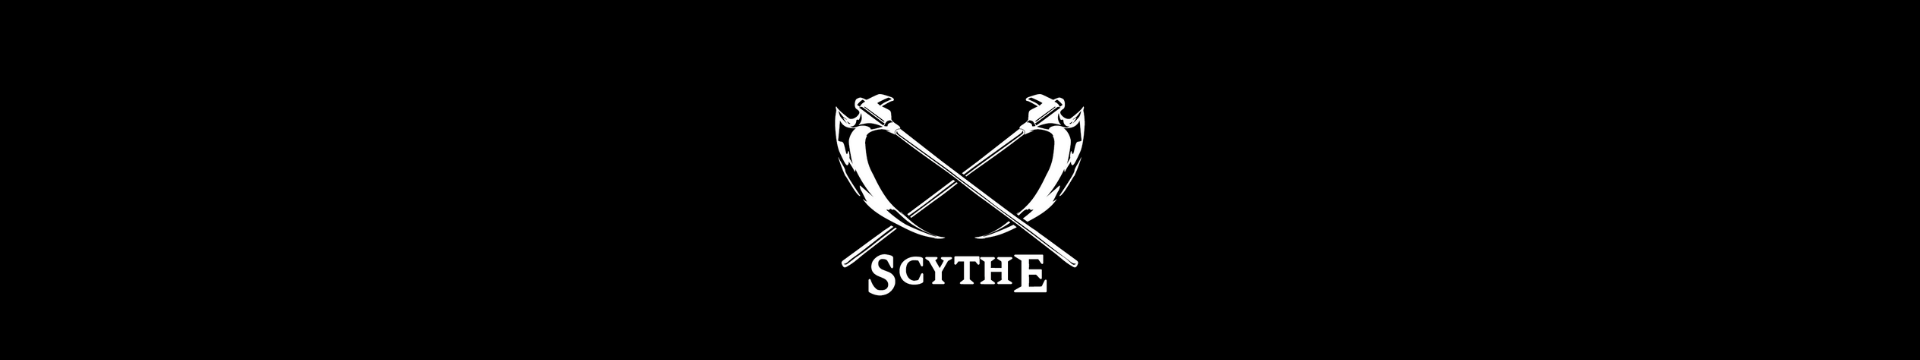 Scythe Inc Store - Newegg.com